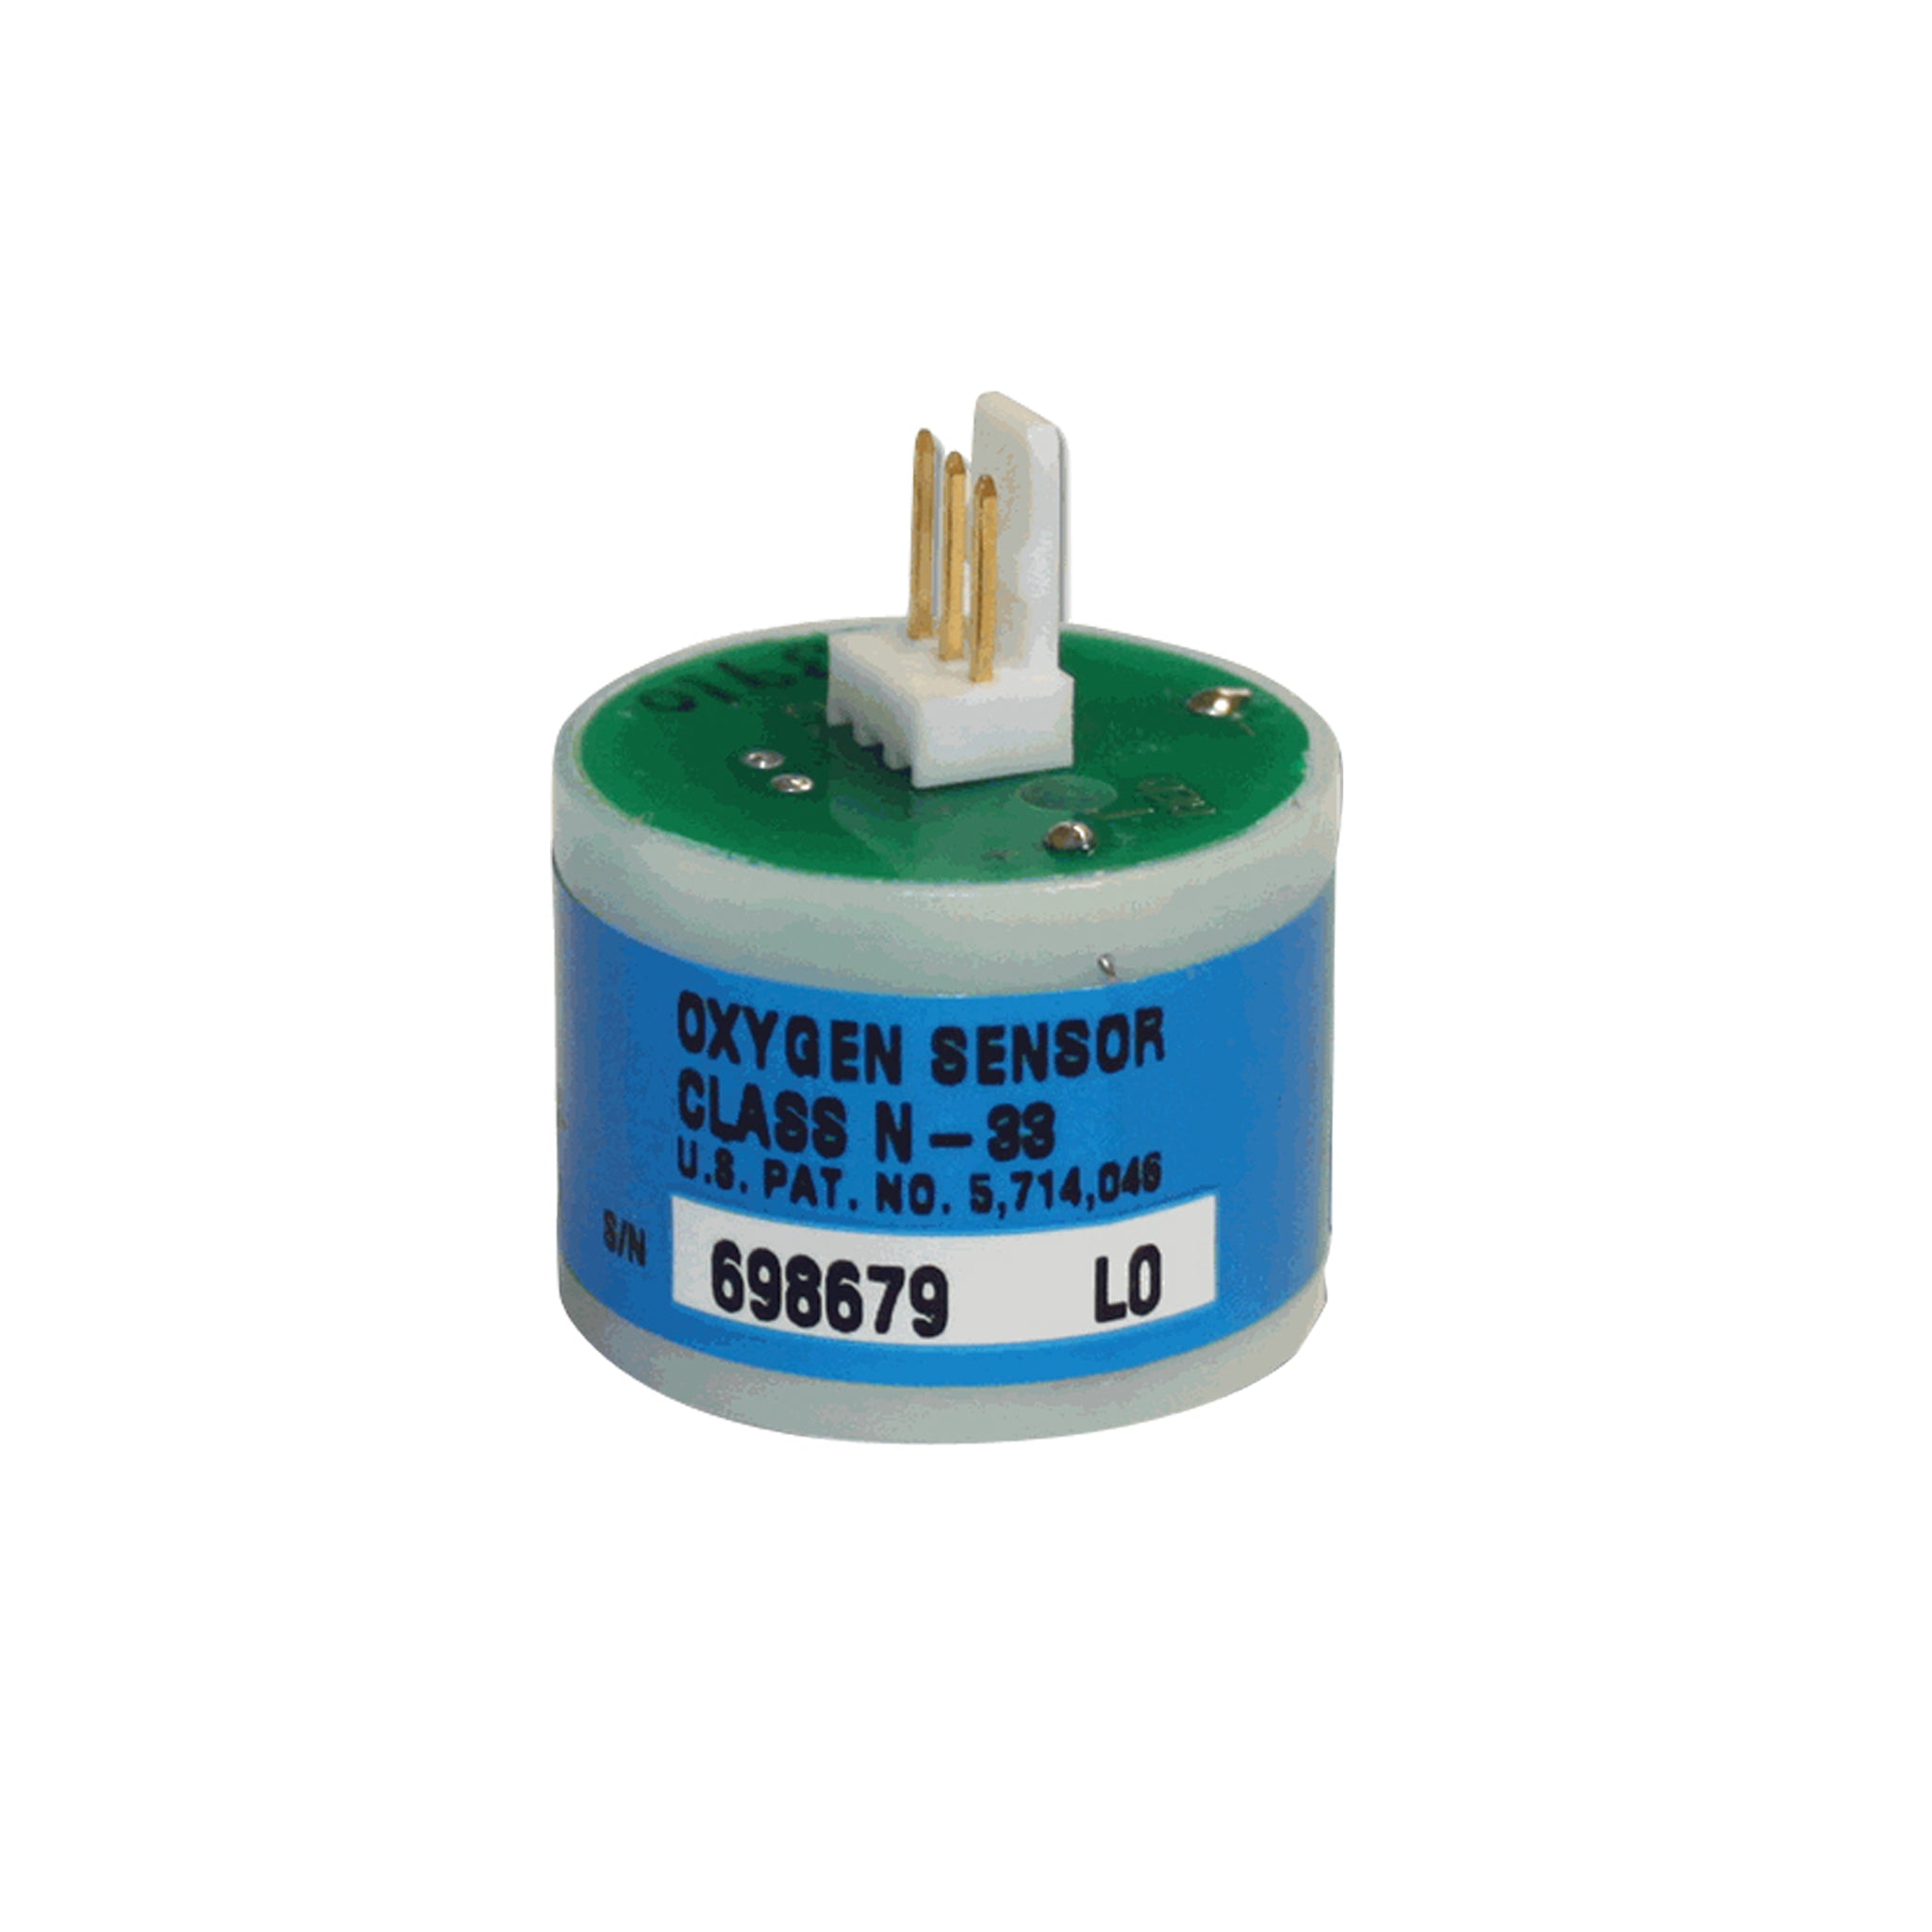 N-33 Oxygen Sensor for AN300 Nitrogen Analyser